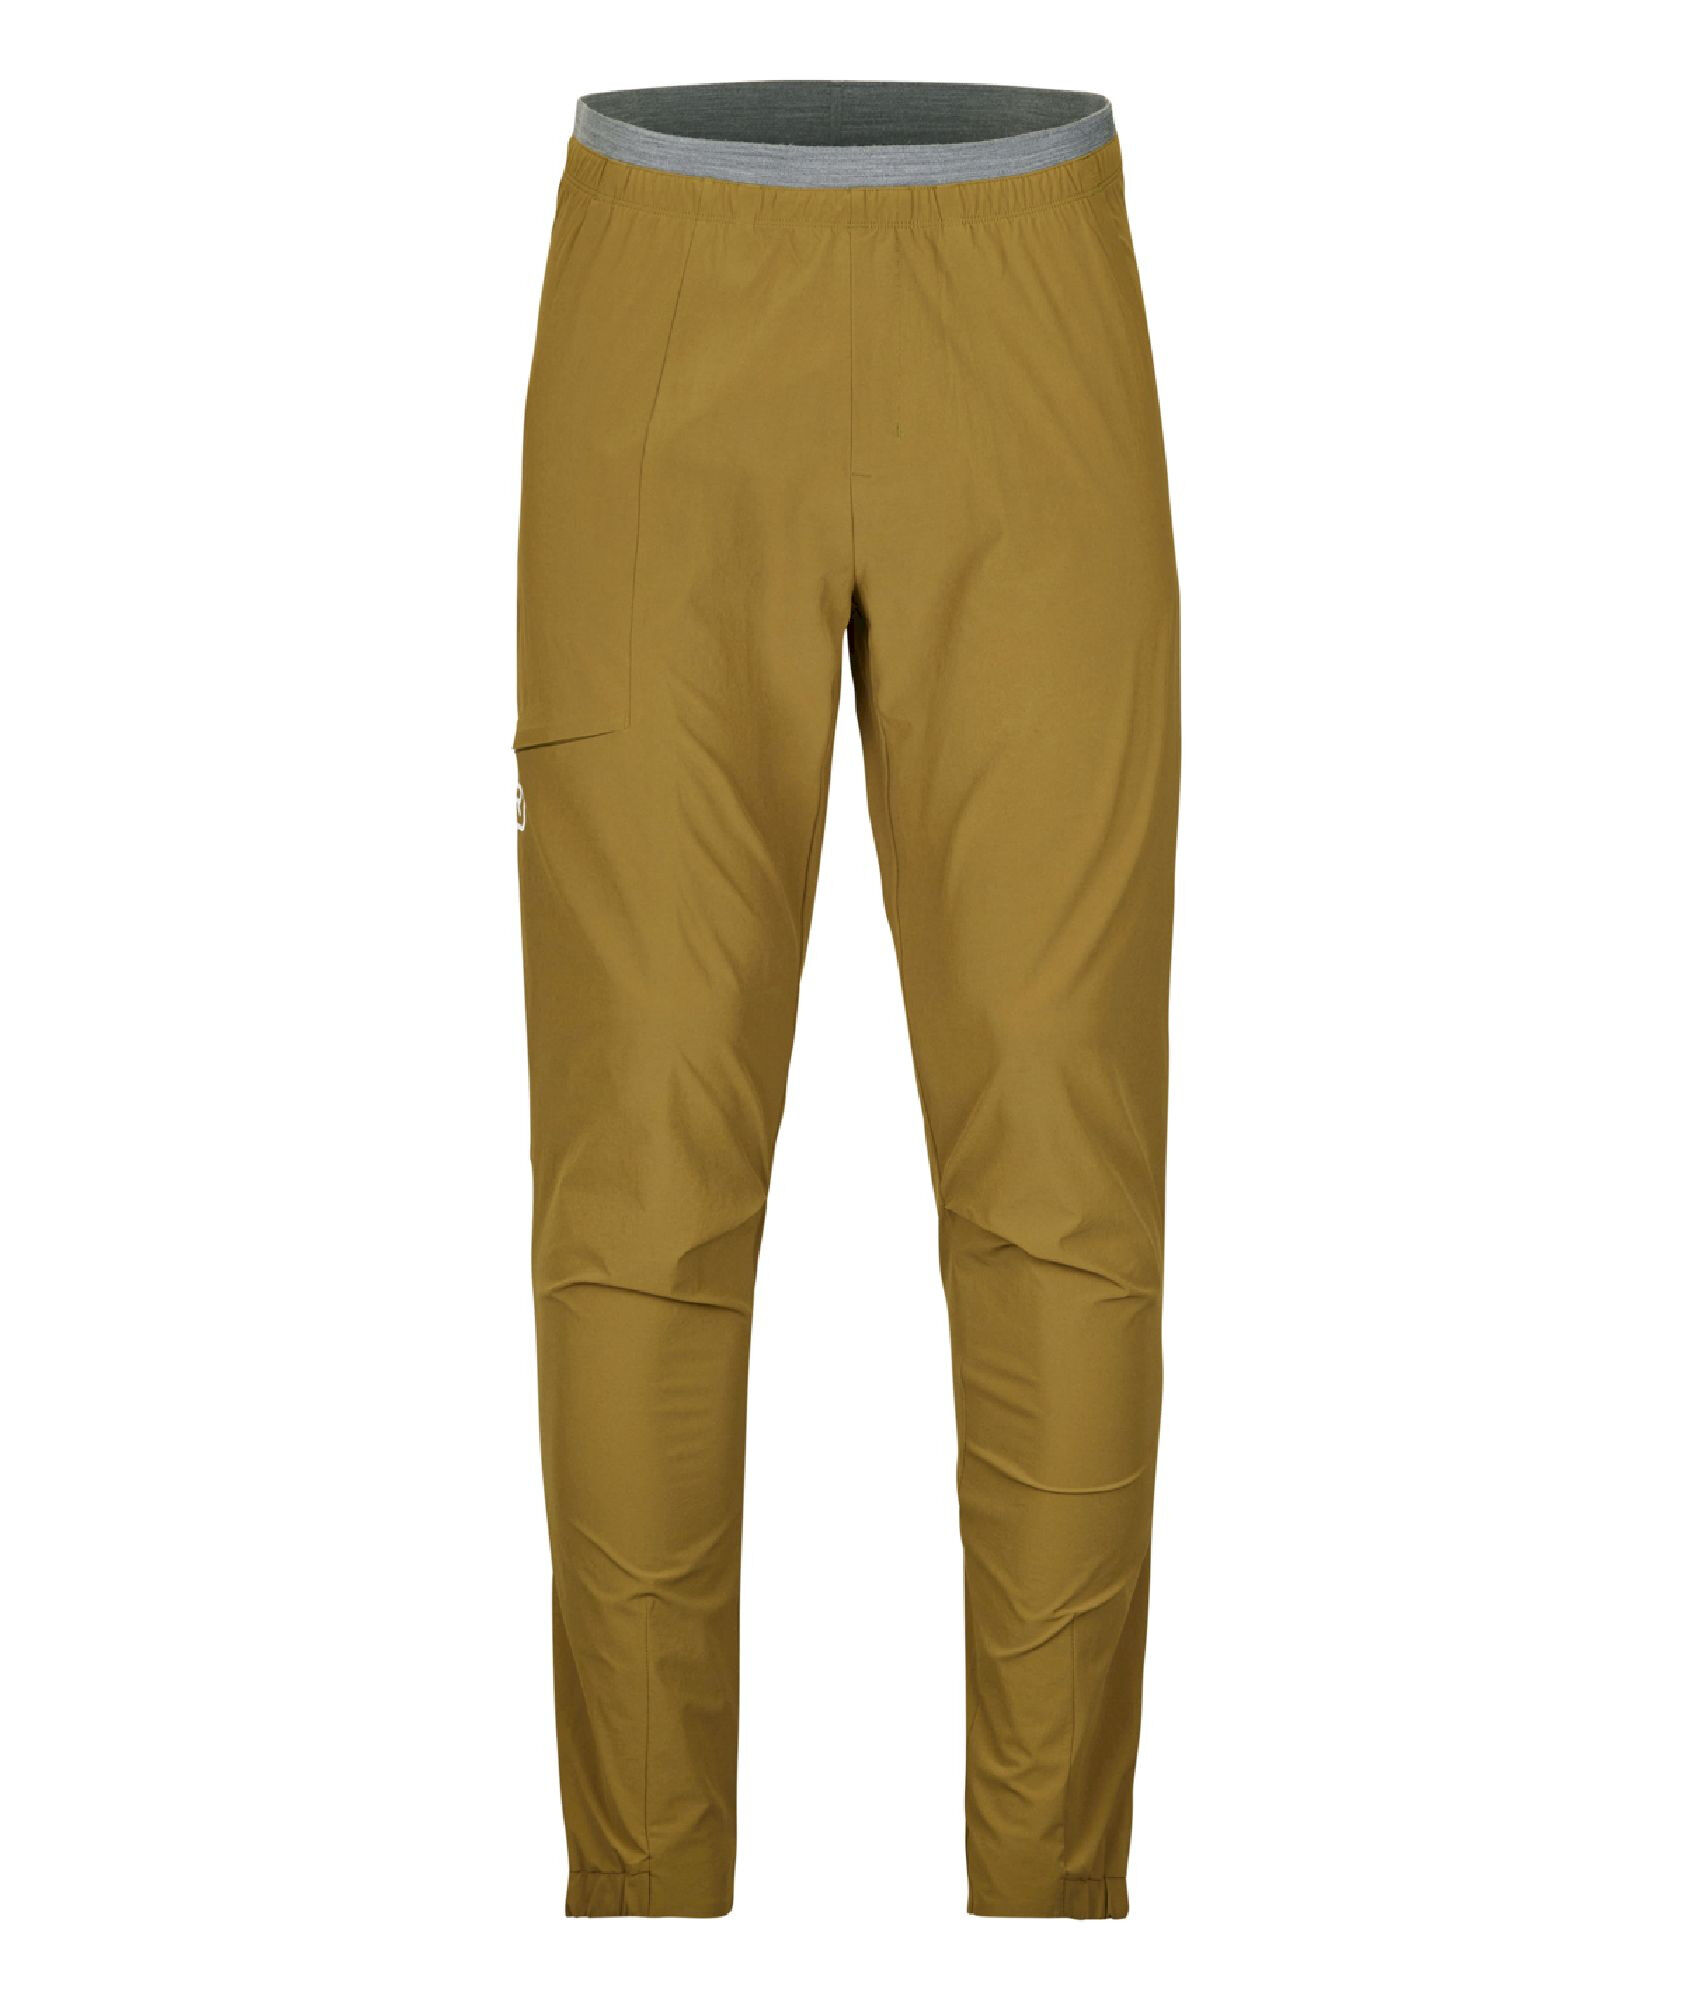 Ortovox Piz Selva Pants - Walking trousers - Men's | Hardloop